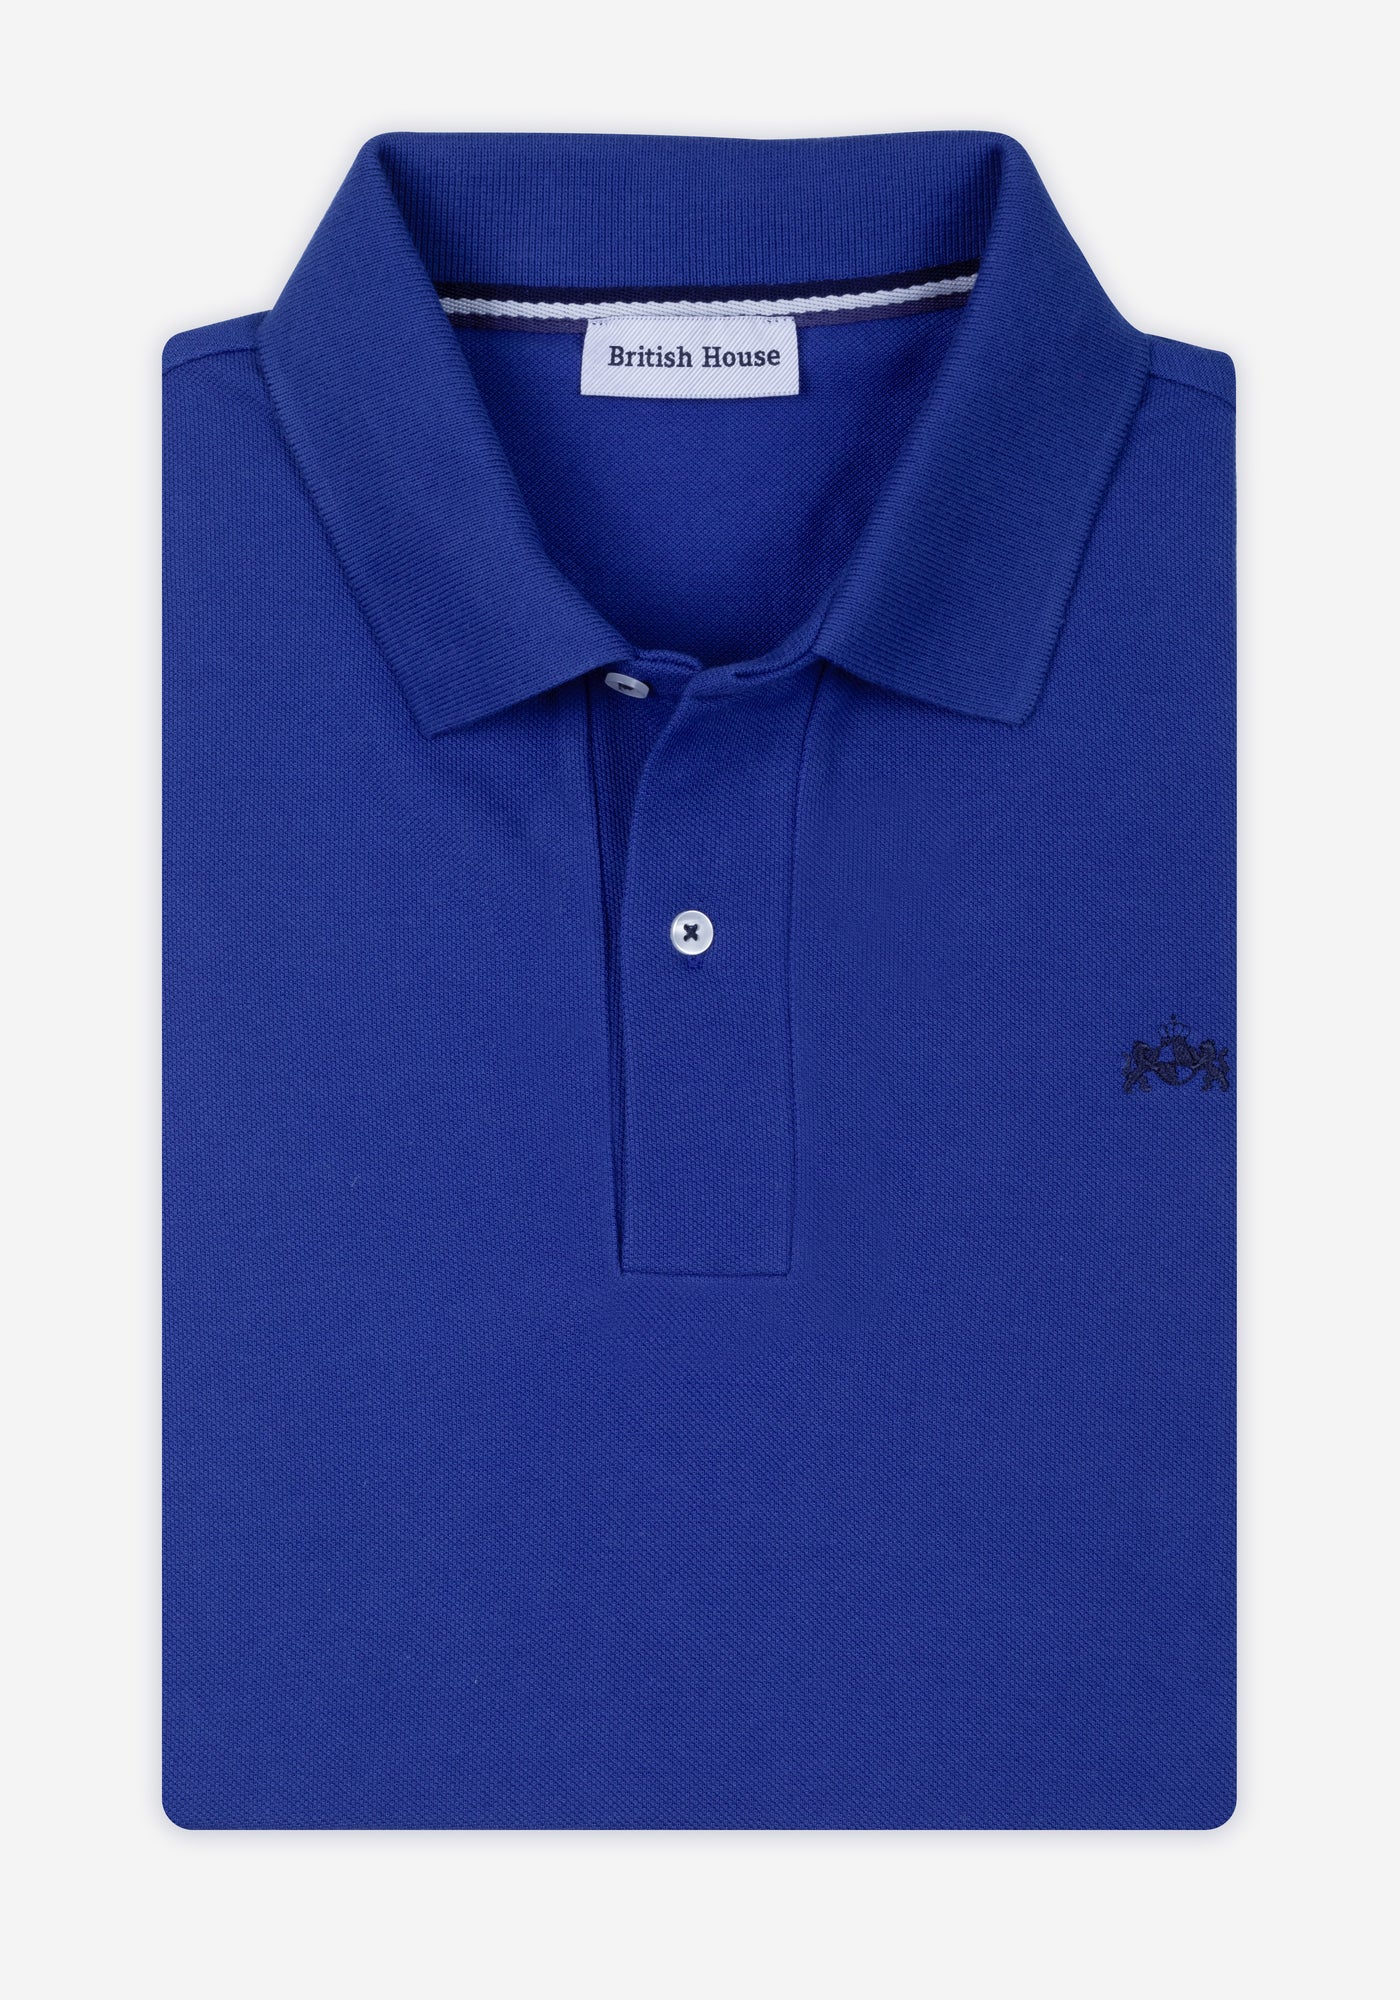 Pure Blue Cotton Polo Shirt